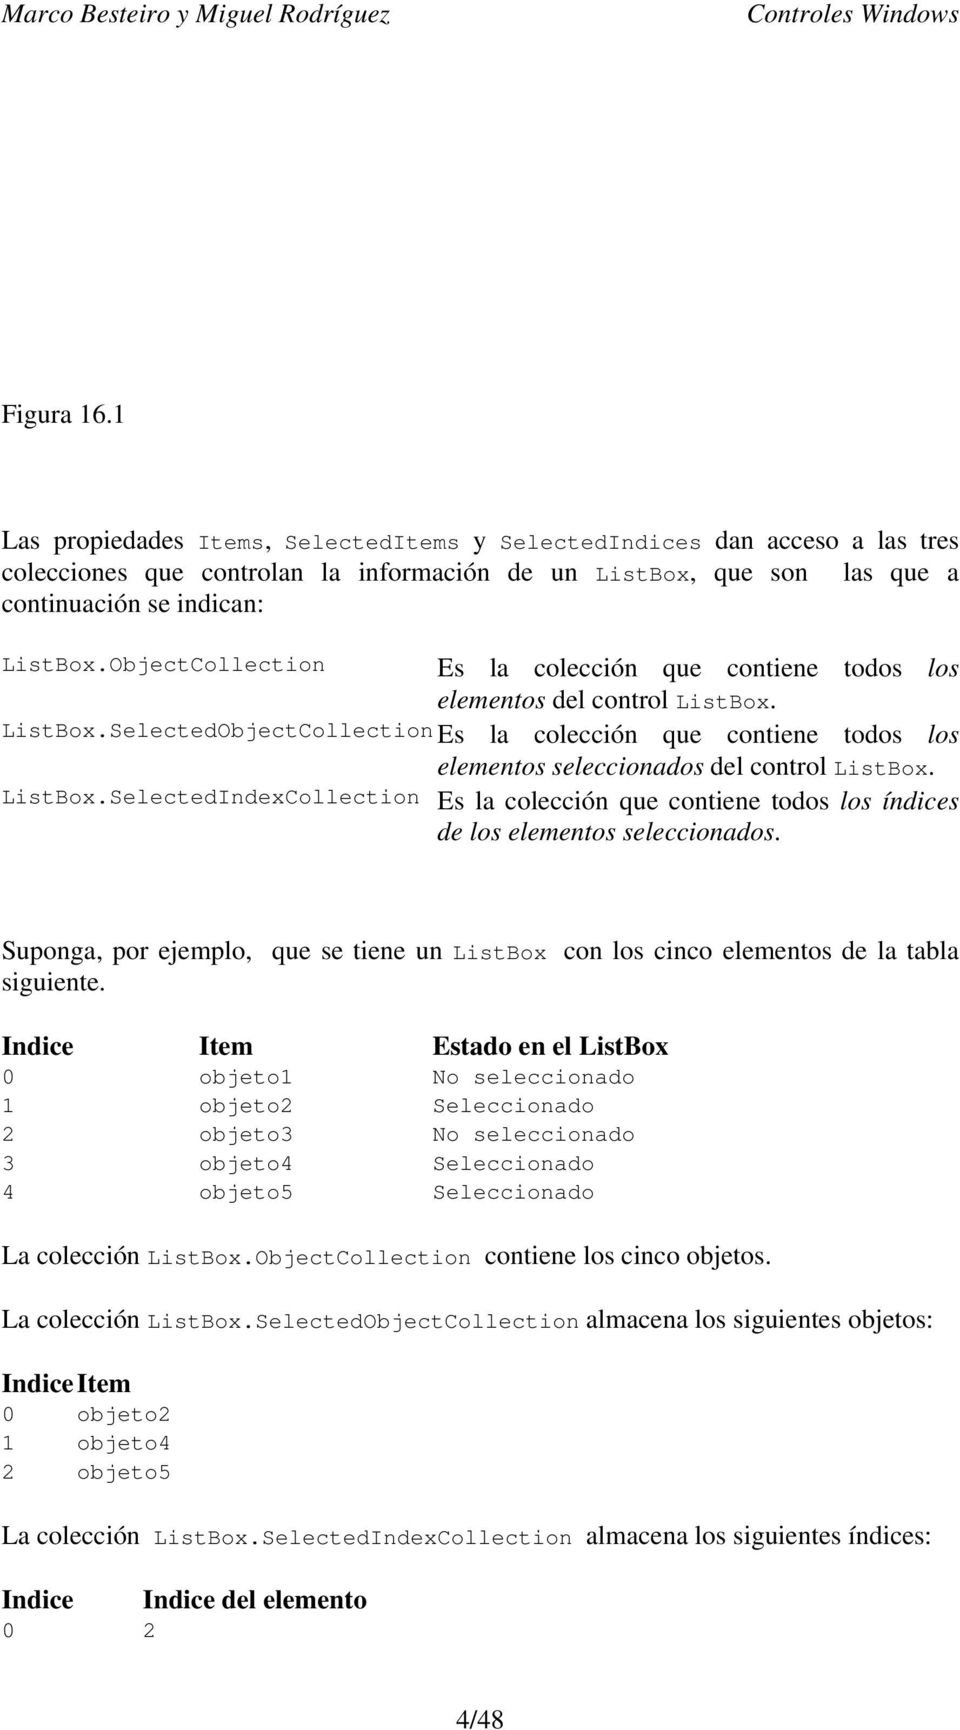 ListBox.SelectedIndexCollection Es la colección que contiene todos los índices de los elementos seleccionados.